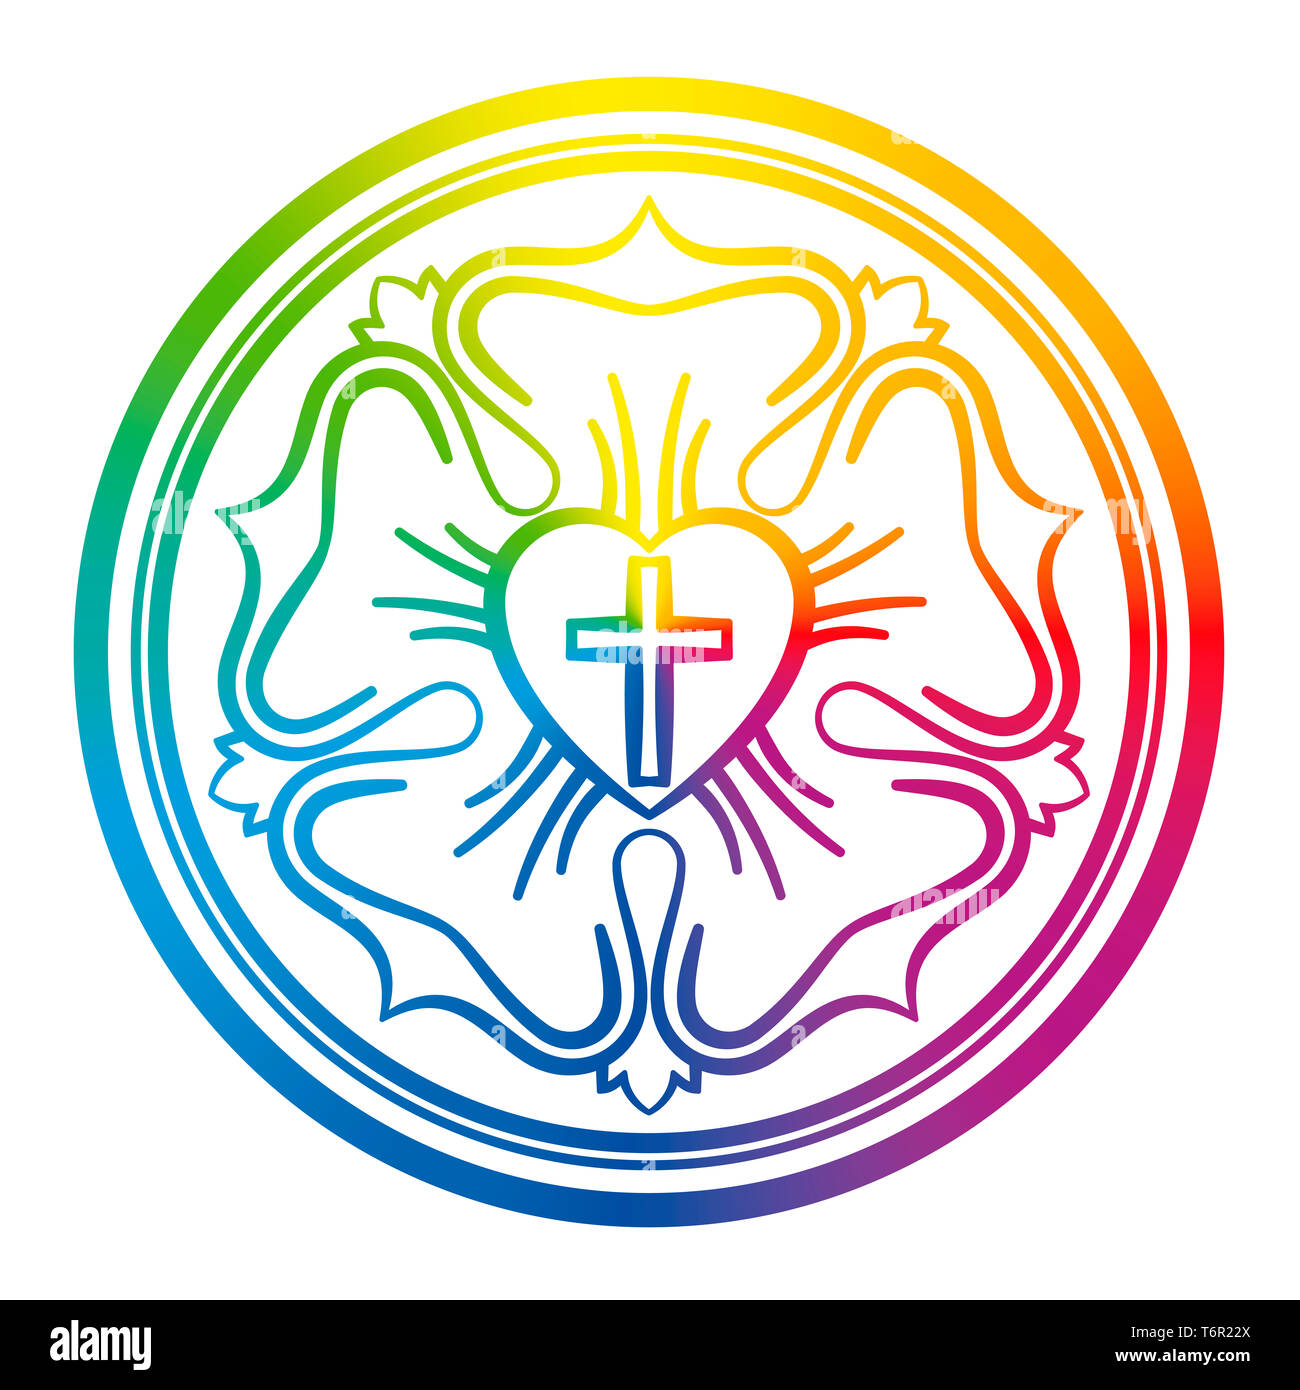 Lutero simbolo di rose. Rainbow segno colorato del luteranesimo e protestanti, costituito da una croce, un cuore, un unica rosa e un anello. Foto Stock